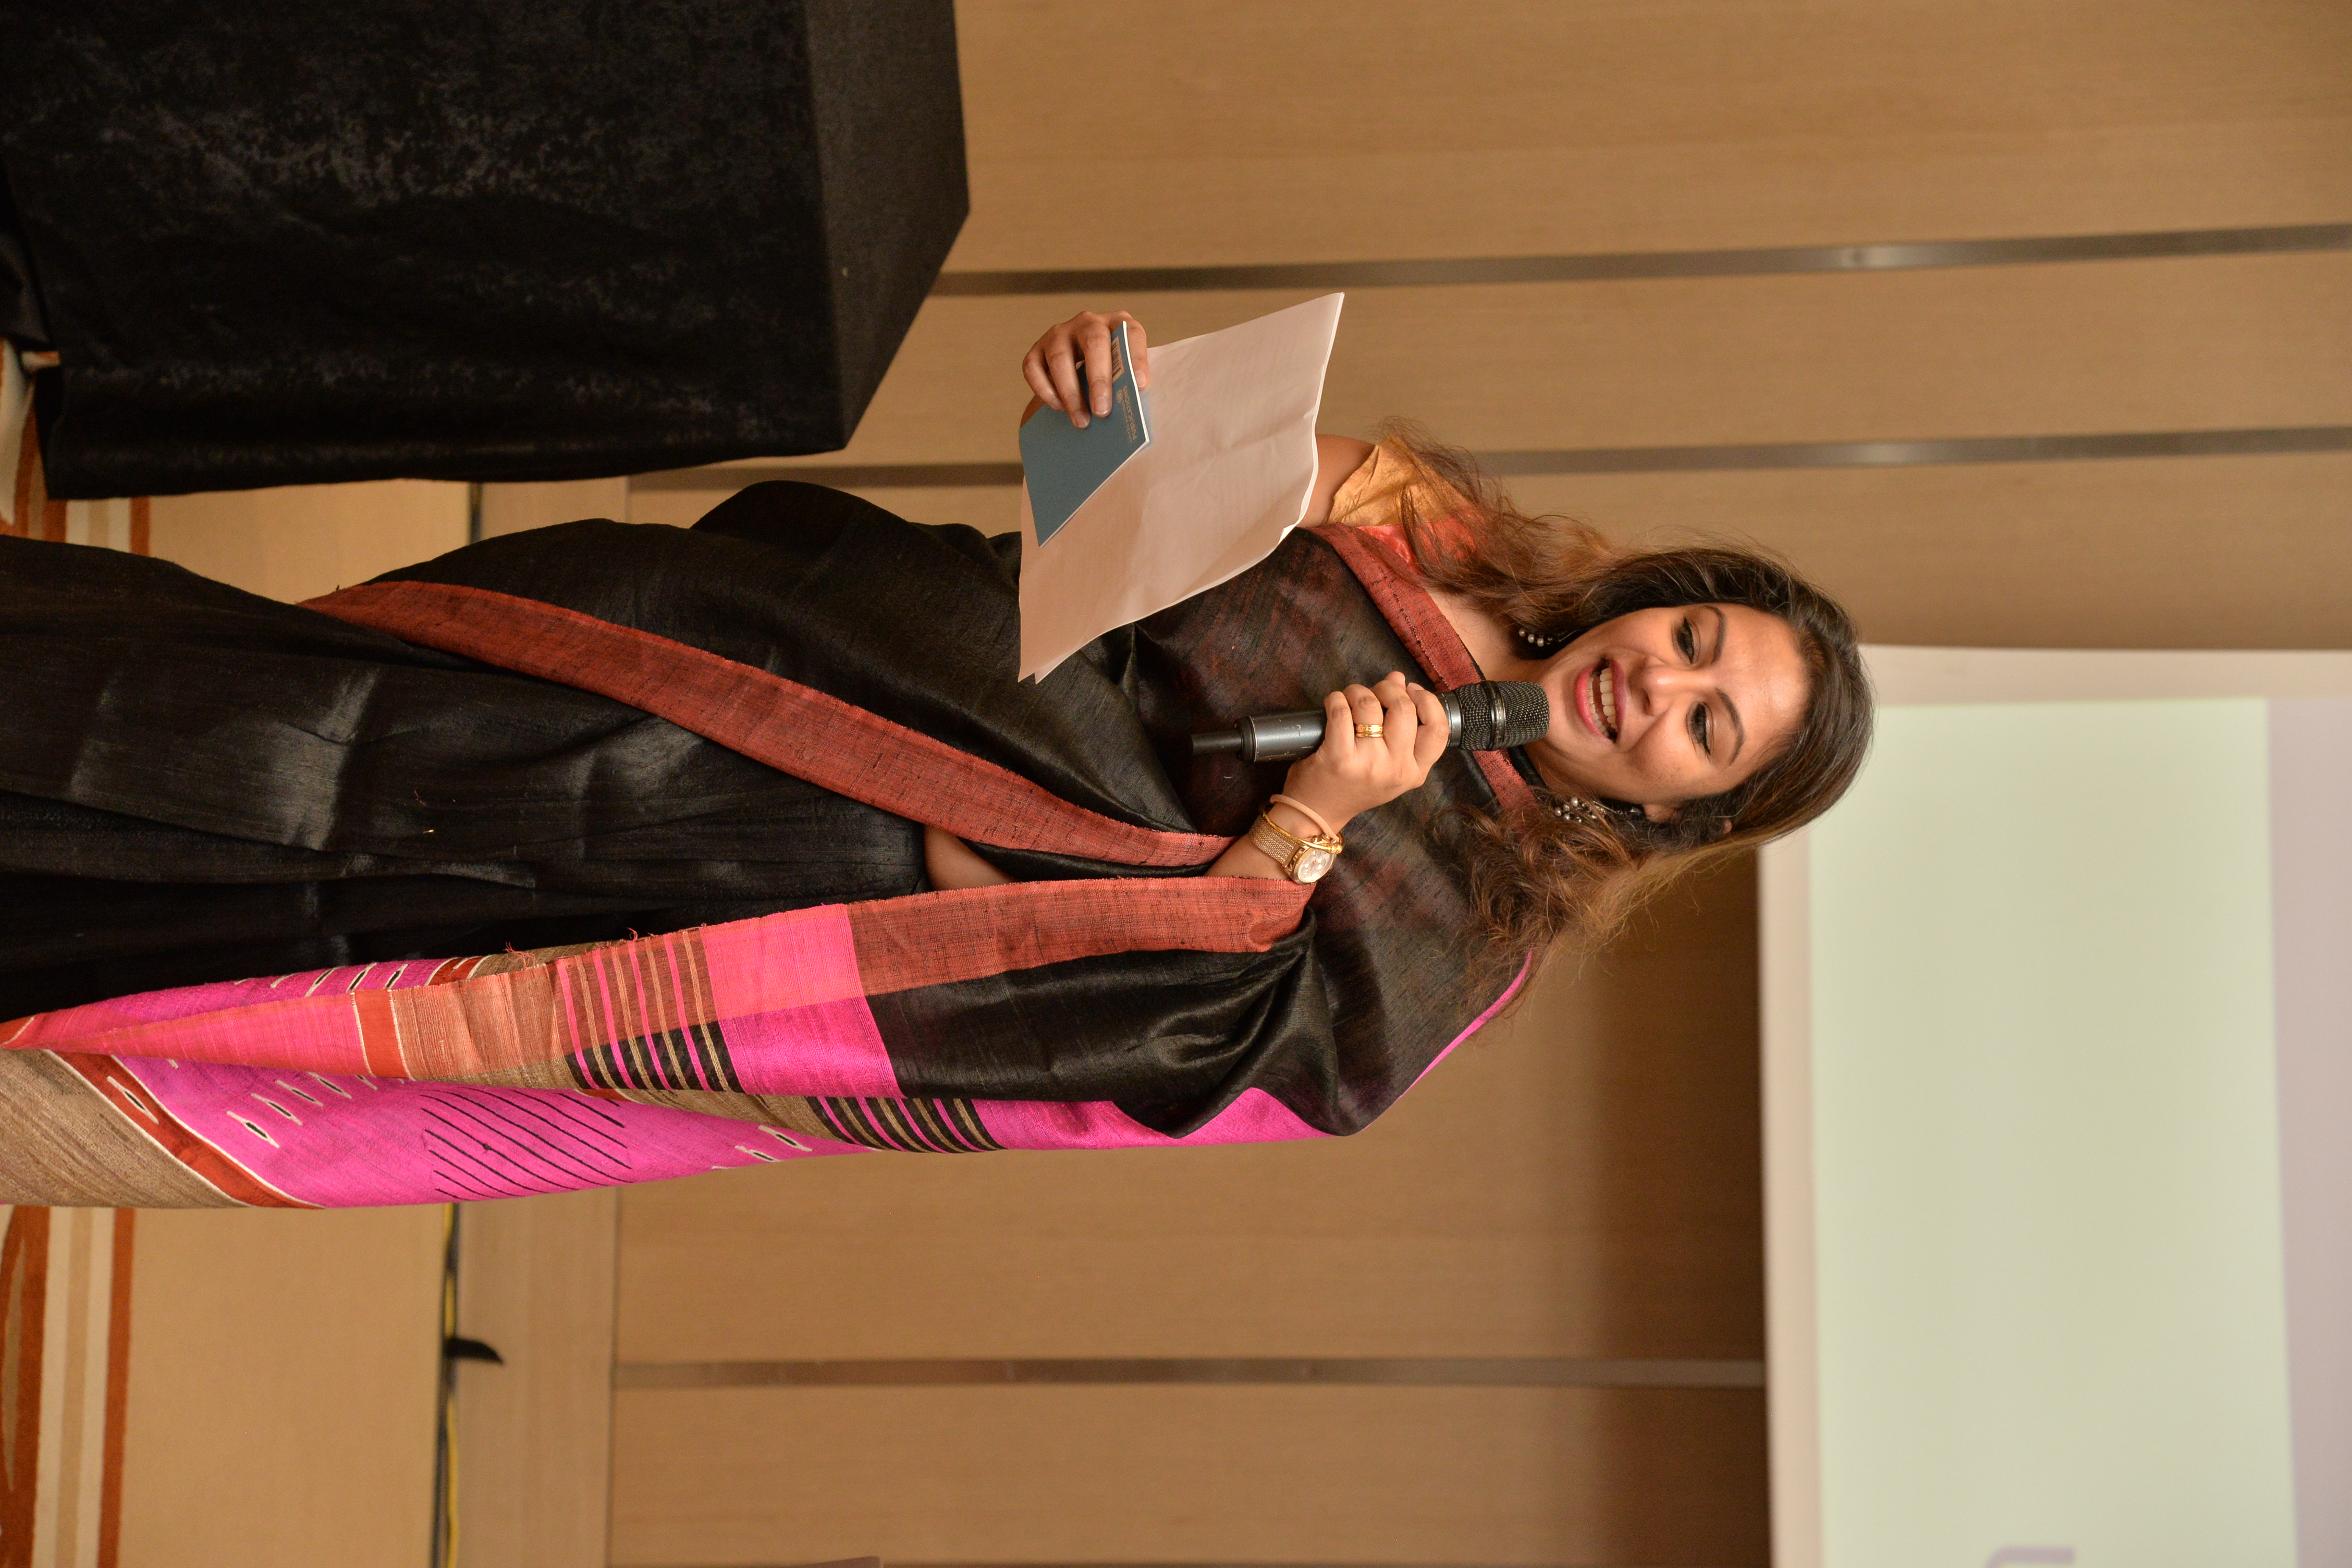 Antara delivering opening speech.